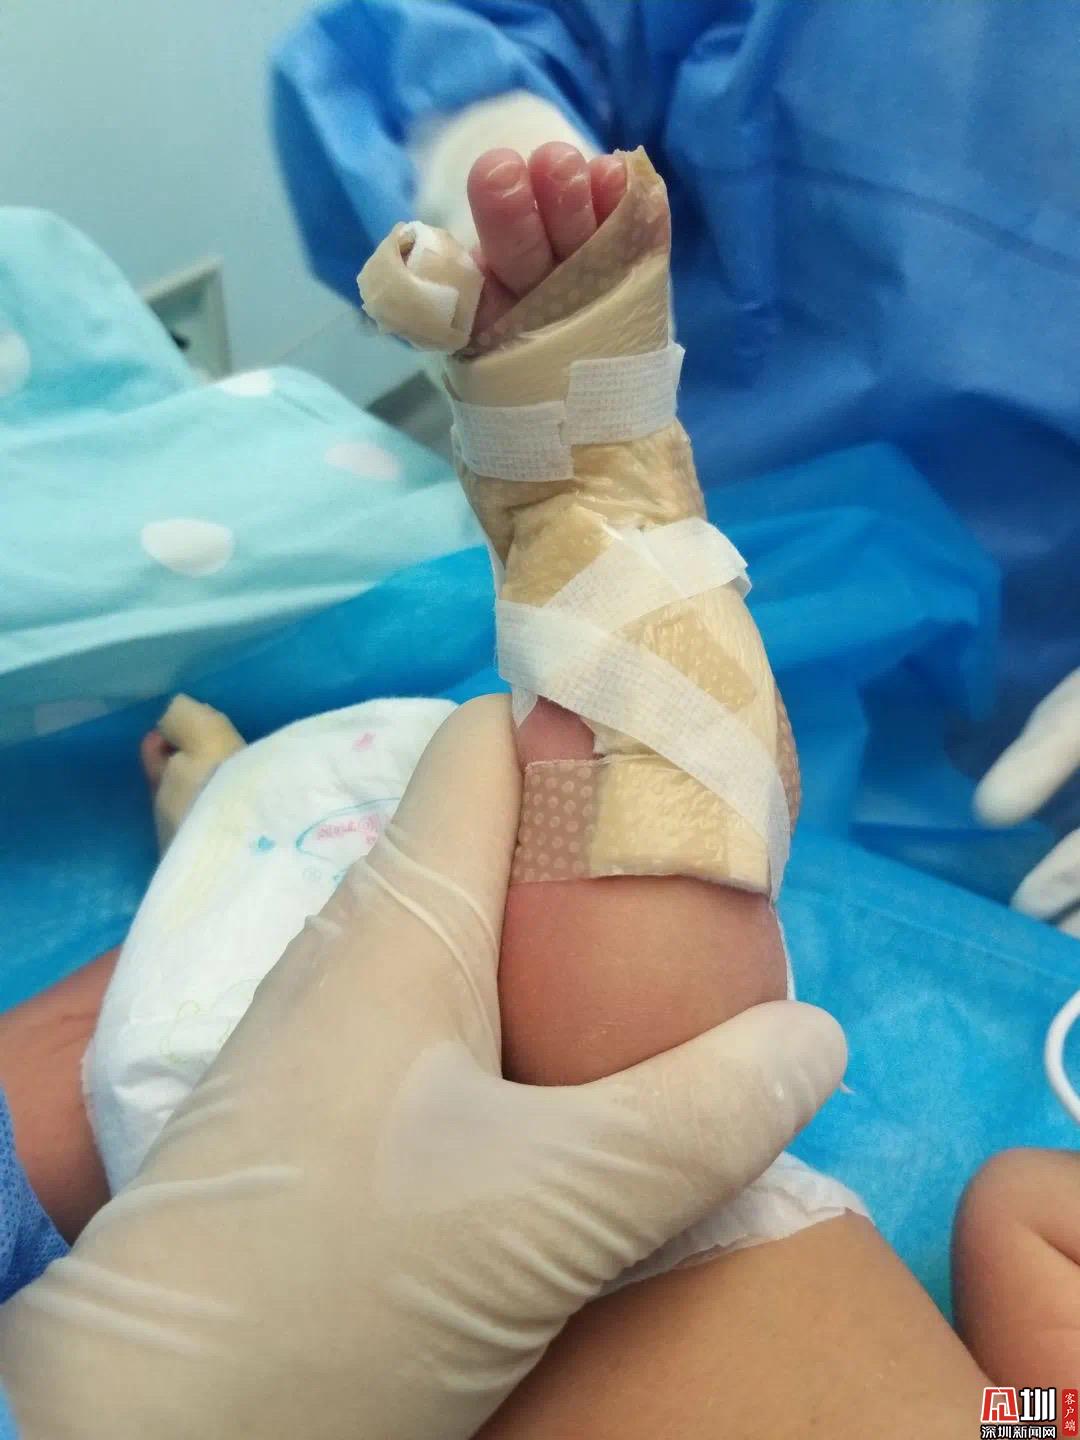 出生时小腿仿佛被剥皮 发病率仅为十万分之一 深圳市三院救治一名先天性皮肤缺损患儿